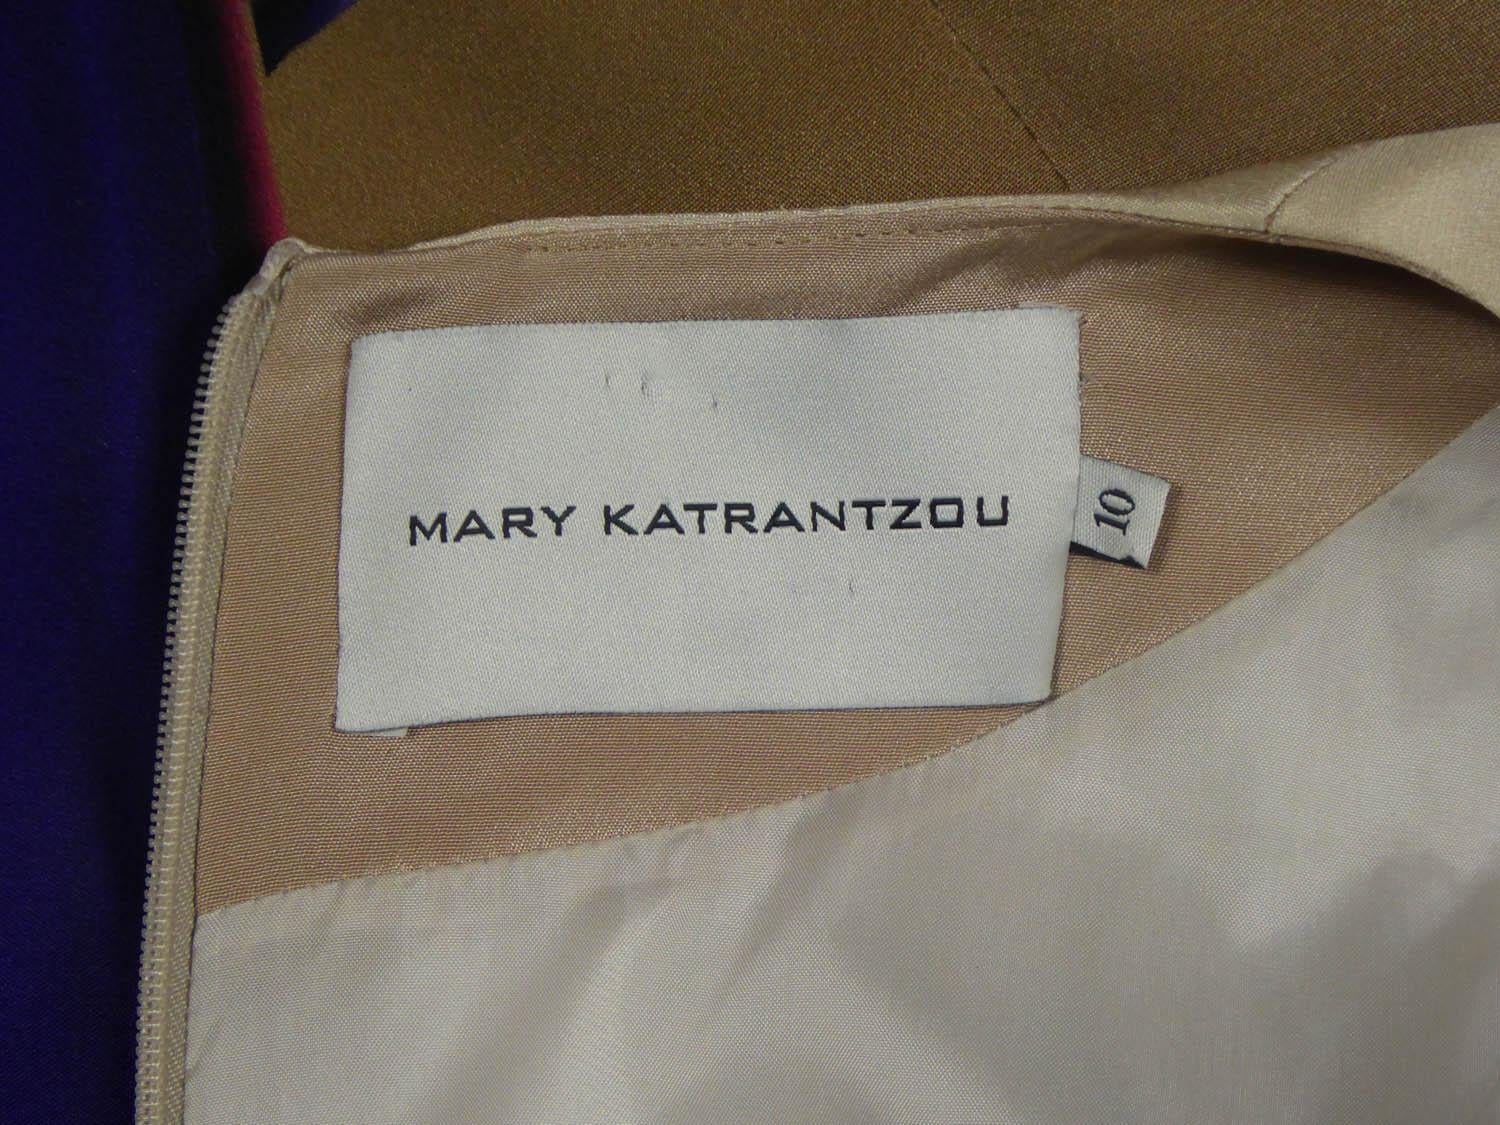 Ungefähr 2000
Frankreich

Asymmetrisches Kleid von Mary Katranzou aus Seidenjersey in den Farben Blau, Beige, Weiß, Gelb und Rot. Seidendruck von digitalen Bildern mit psychedelischen Mustern. Der Rock ist schräg geschnitten, um die Asymmetrie des